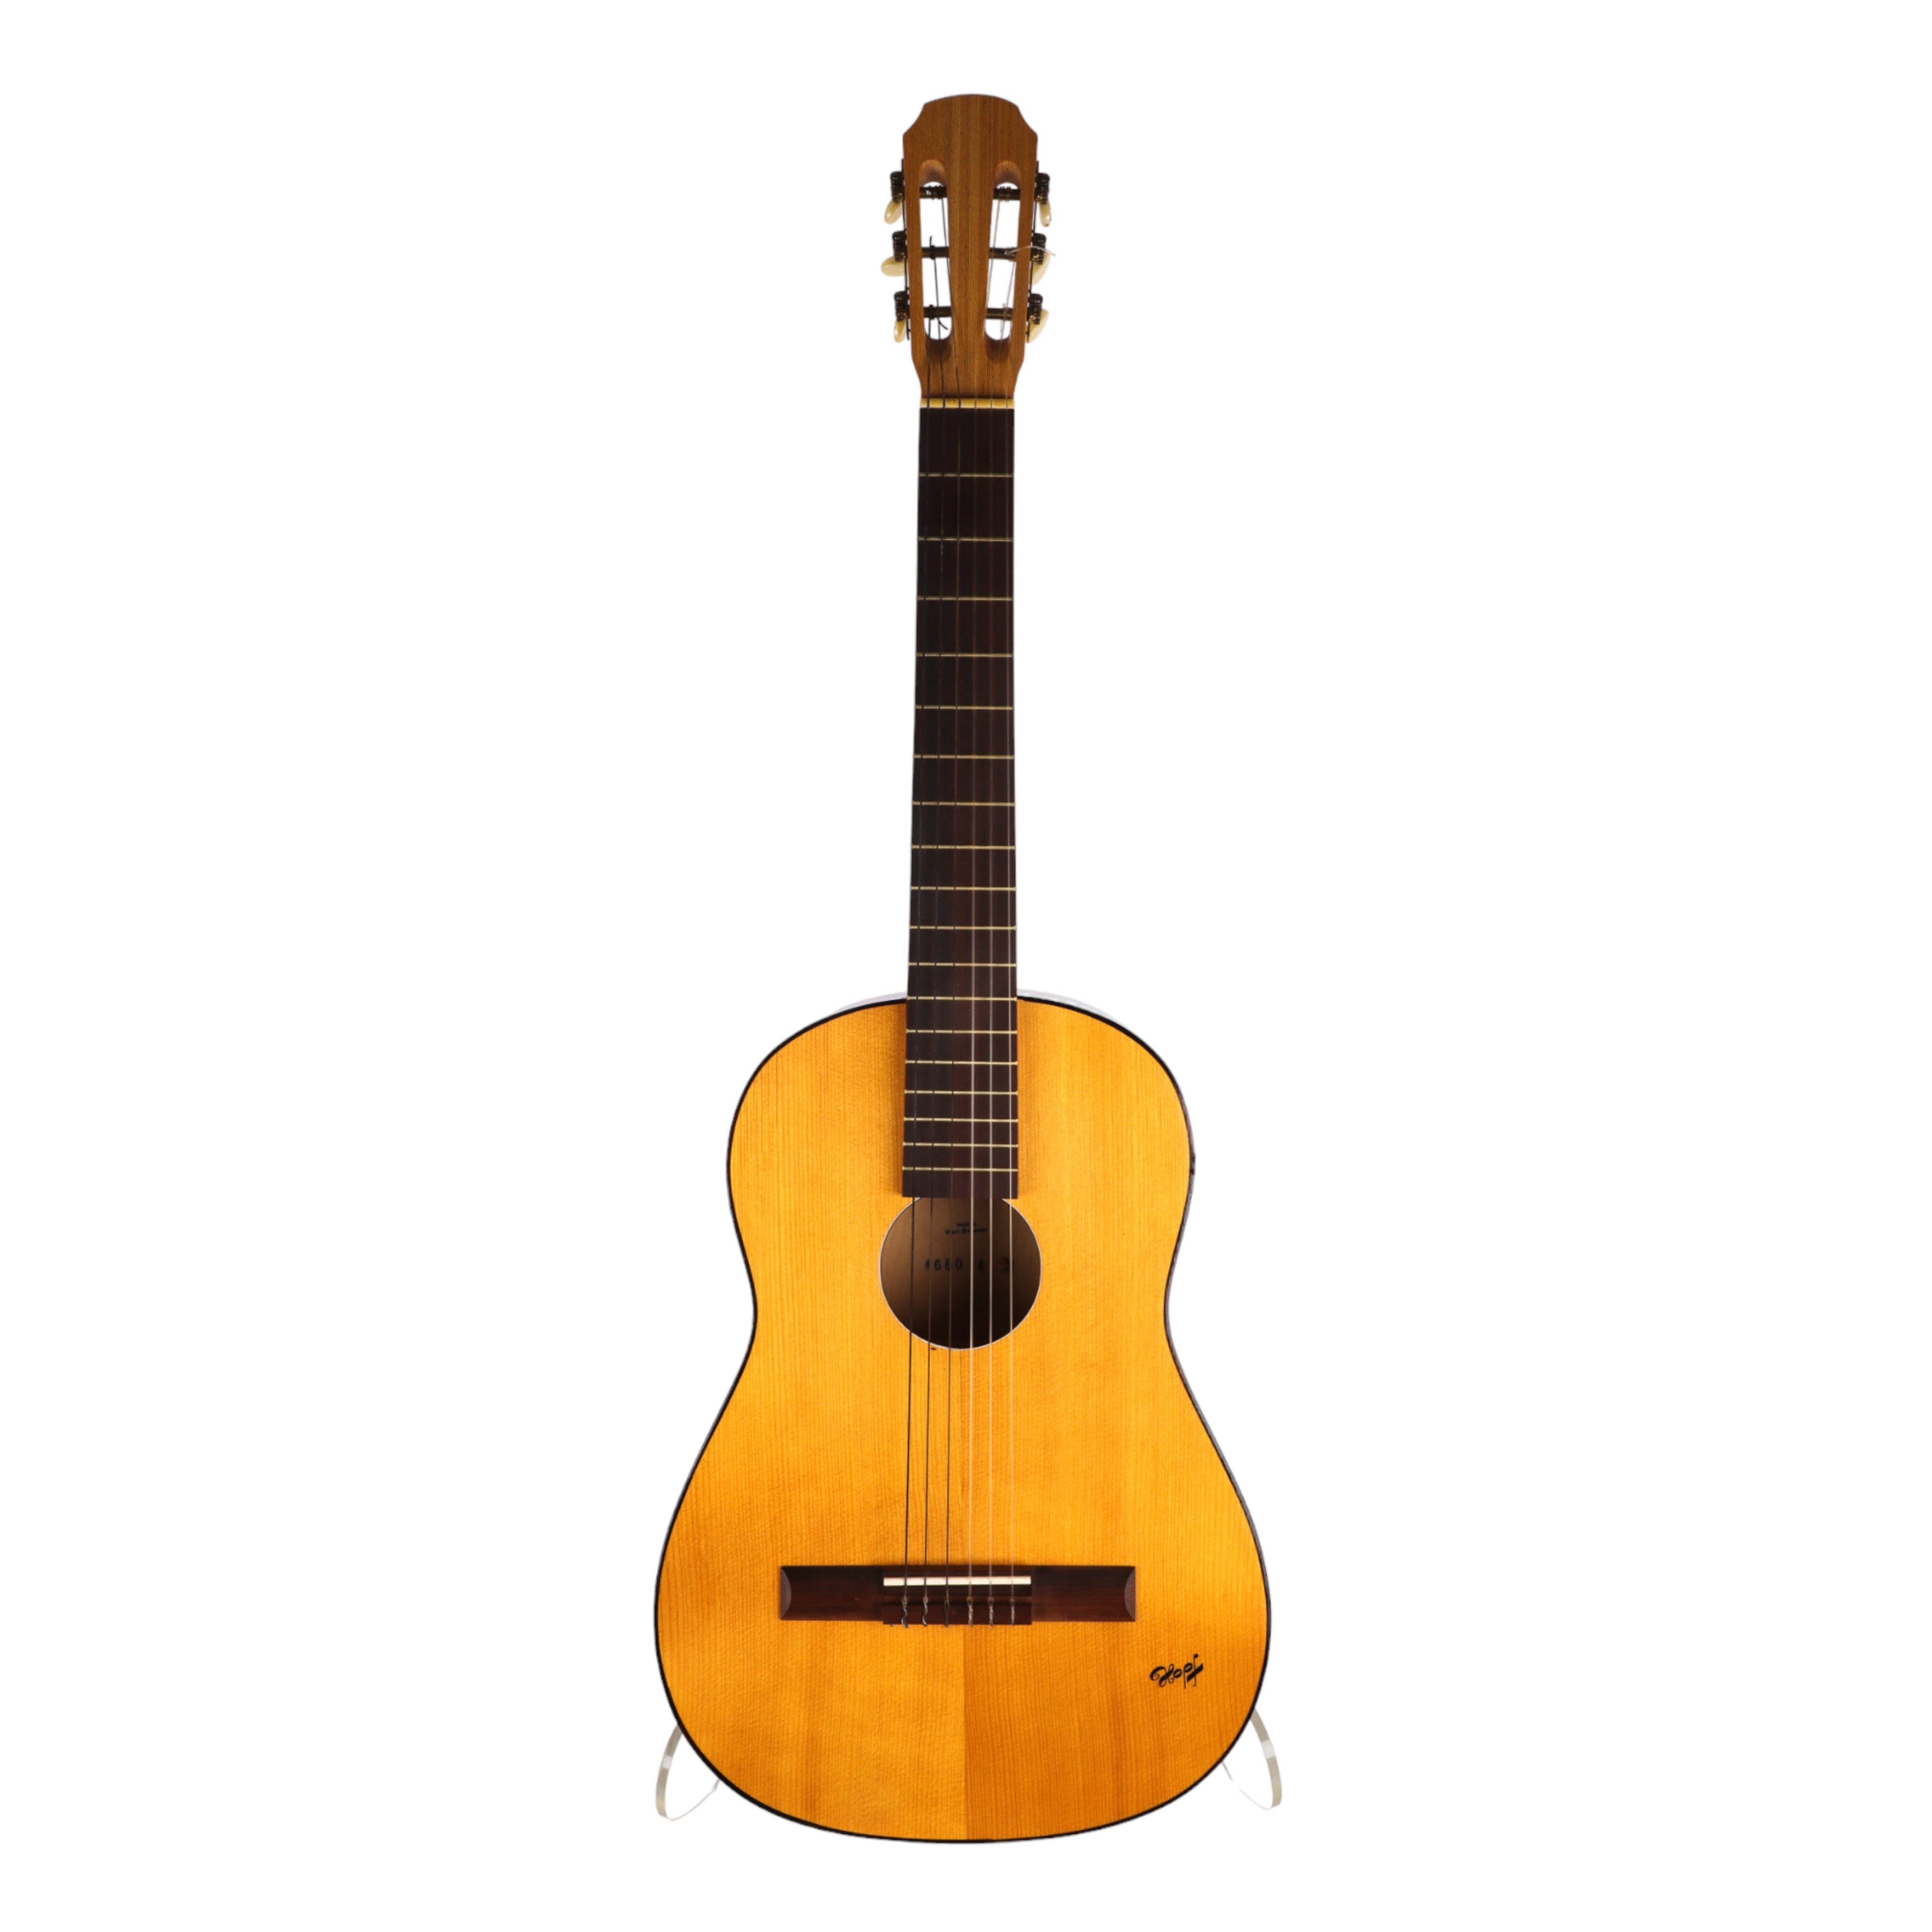 Hopf 6 string acoustic guitar  3ca85c